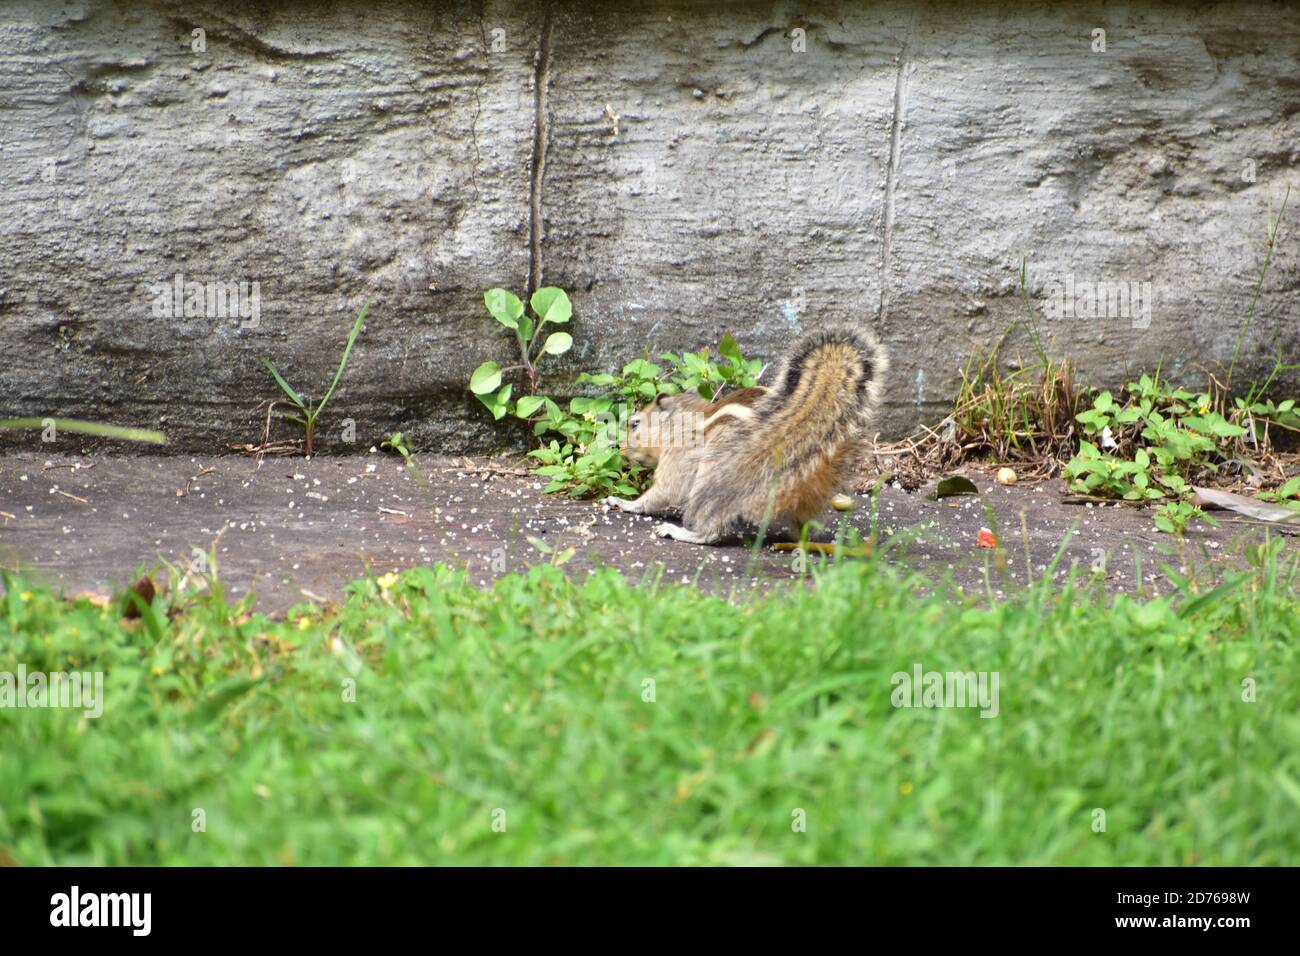 Un écureuil mangeant de la nourriture dans un parc. Herbe verte tout autour de lui Banque D'Images